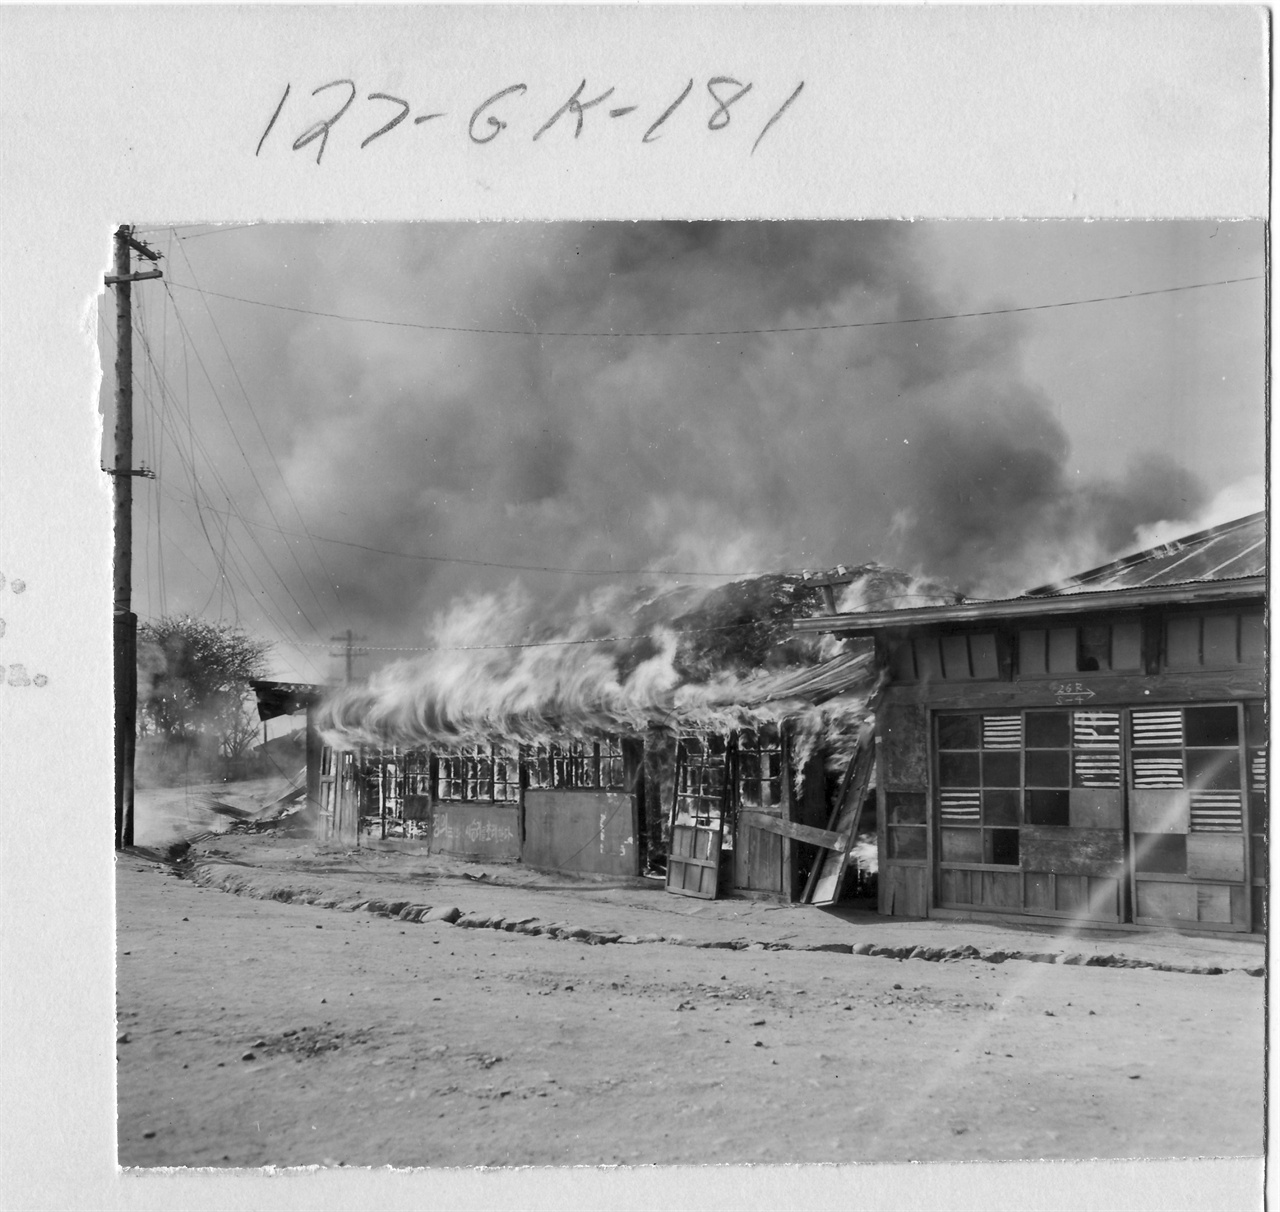  1950. 9. 29. 서울. 유엔군의 수복 후에도 인민군 잔당 소탕작전으로 불길은 계속 치솟았다. 